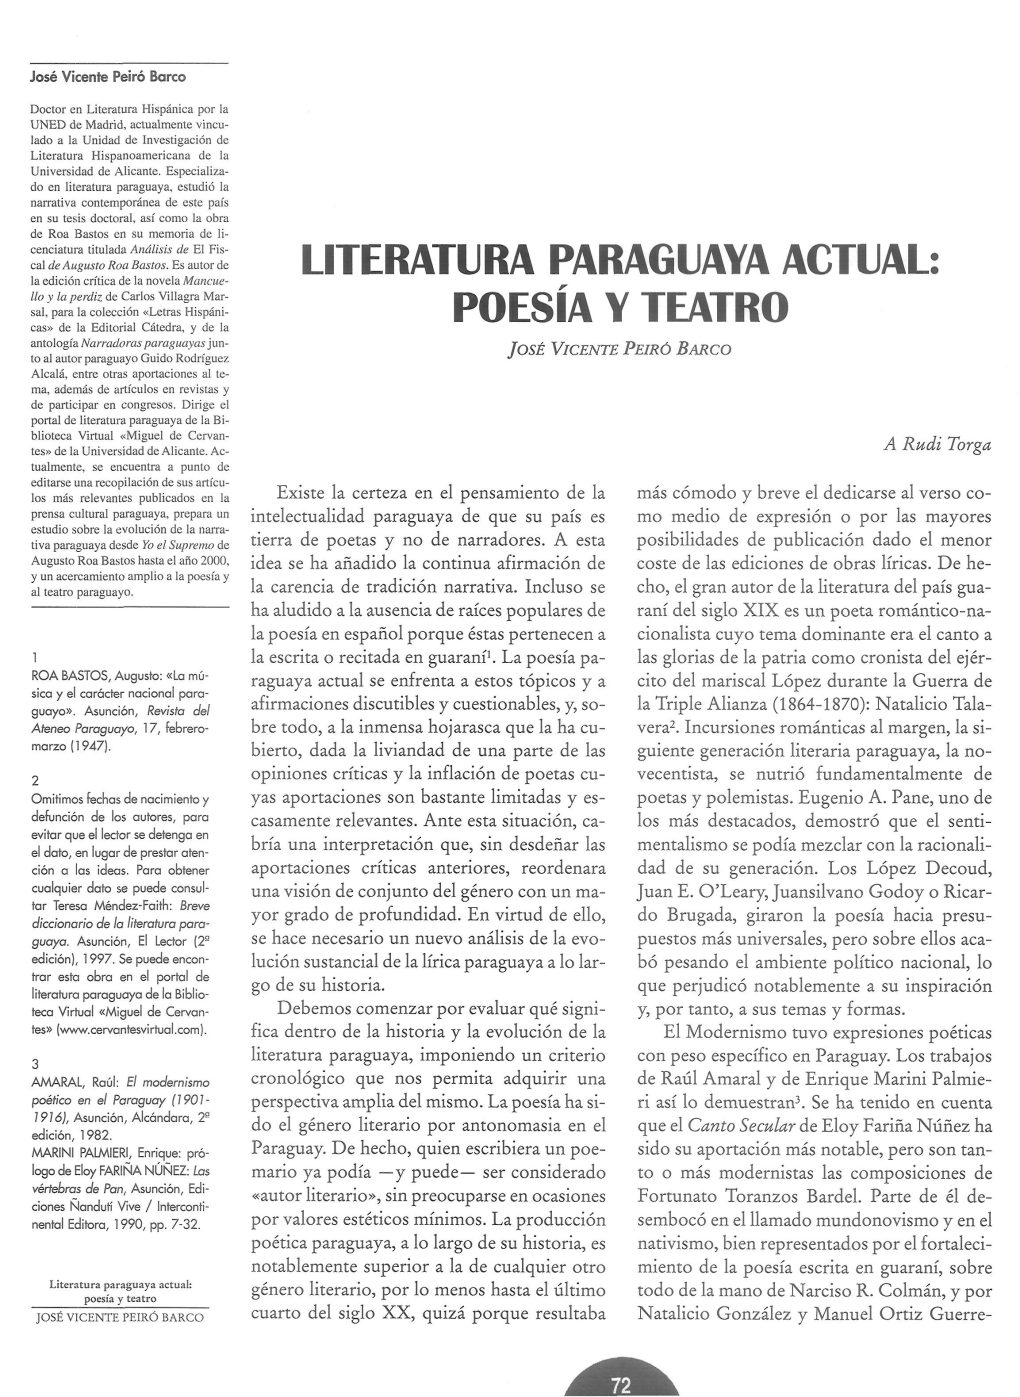 Literatura Paraguaya Actual: Poesía Y Teatro Género Literario, Por Lo Menos Hasta El Último Todo De La Mano De Narciso R